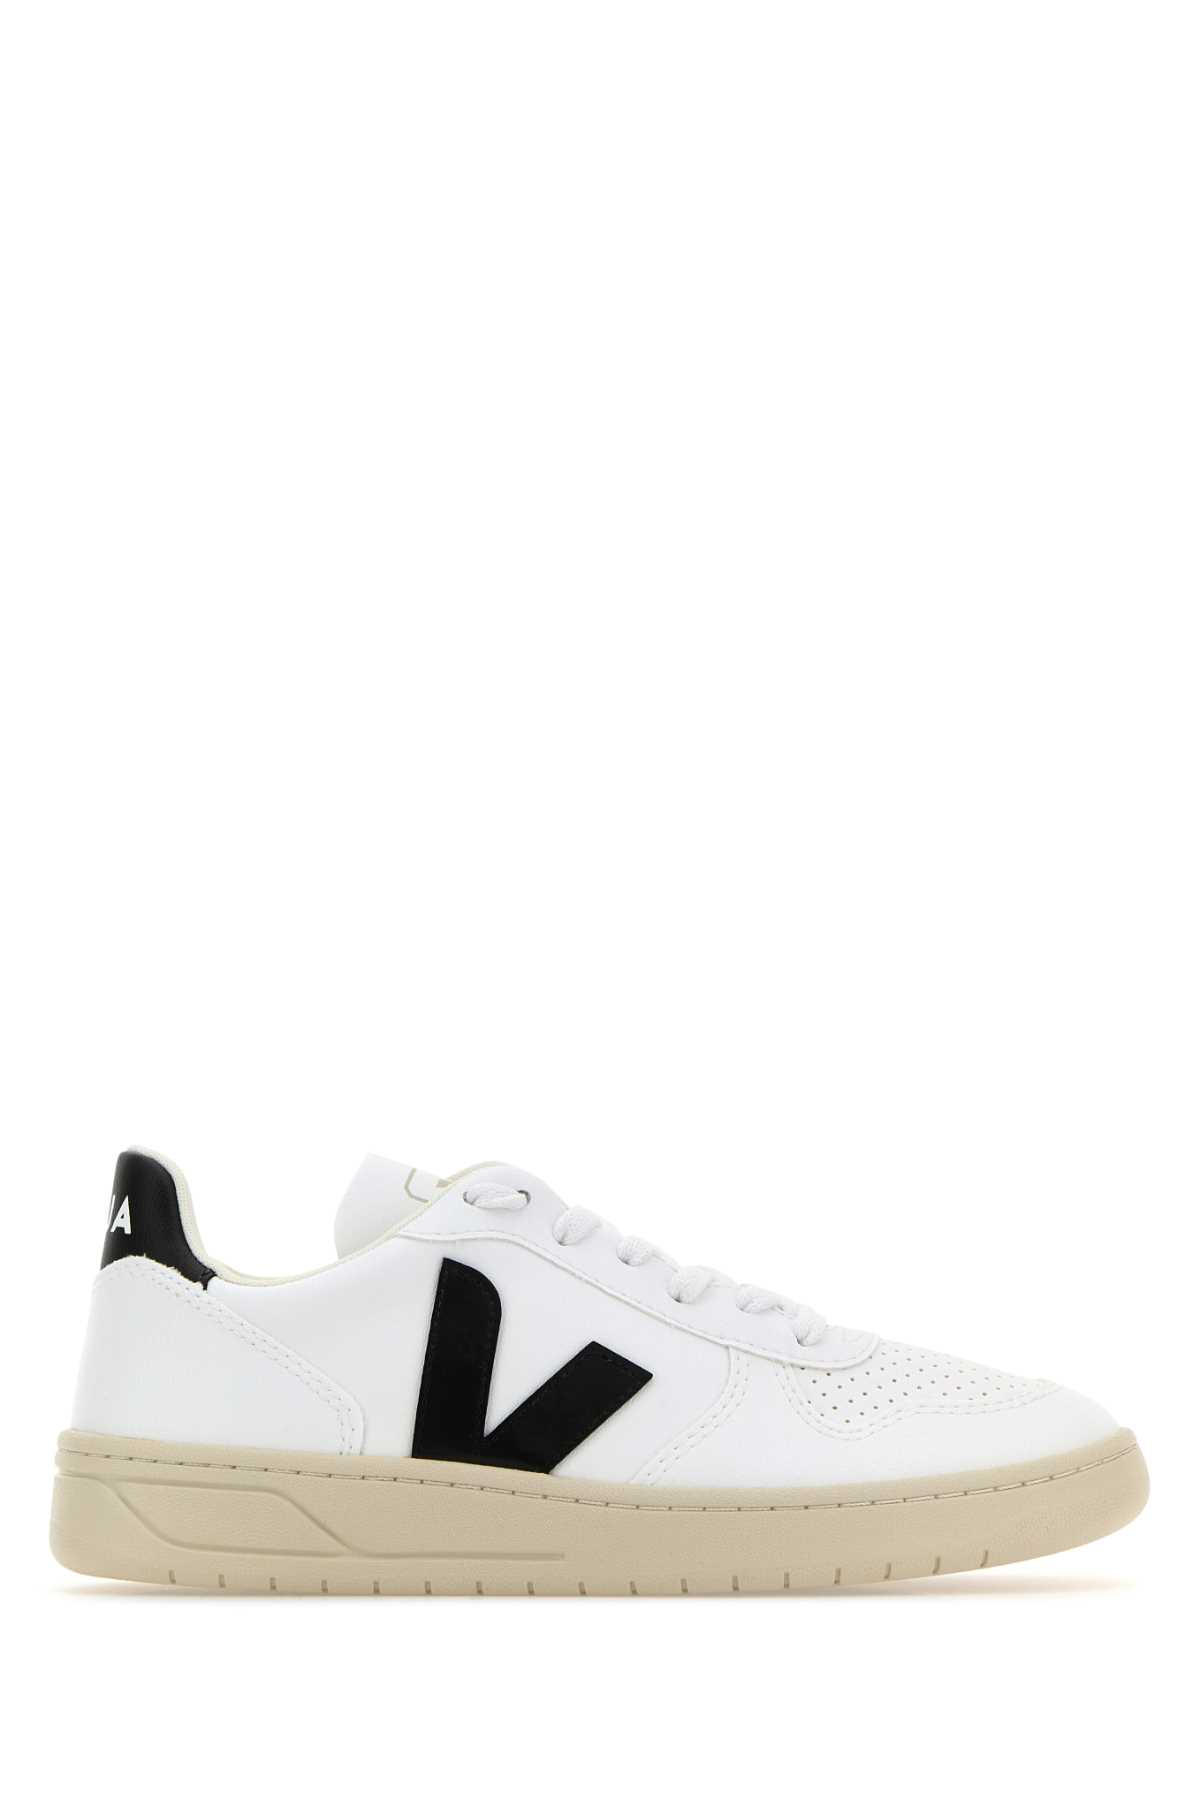 Shop Veja White Leather V-10 Sneakers In Whiteblack